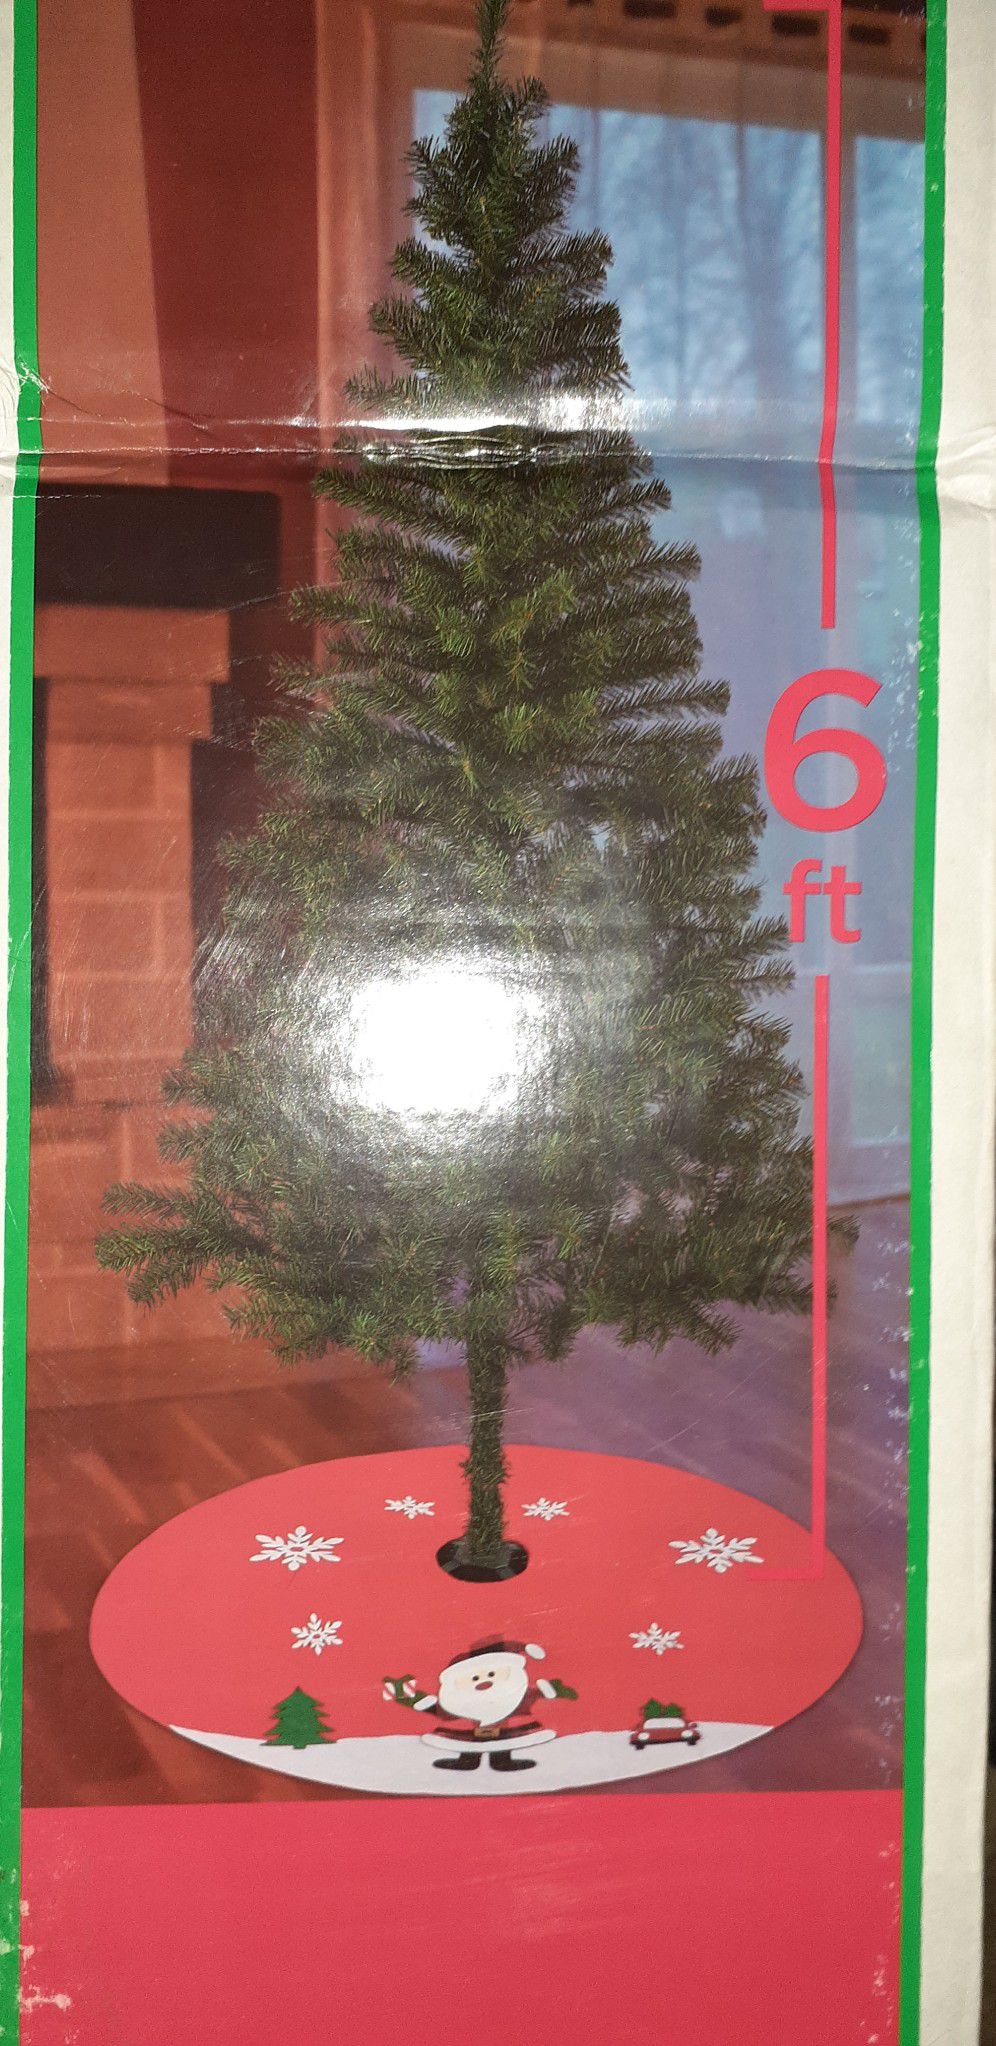 6 ft. Christmas Tree